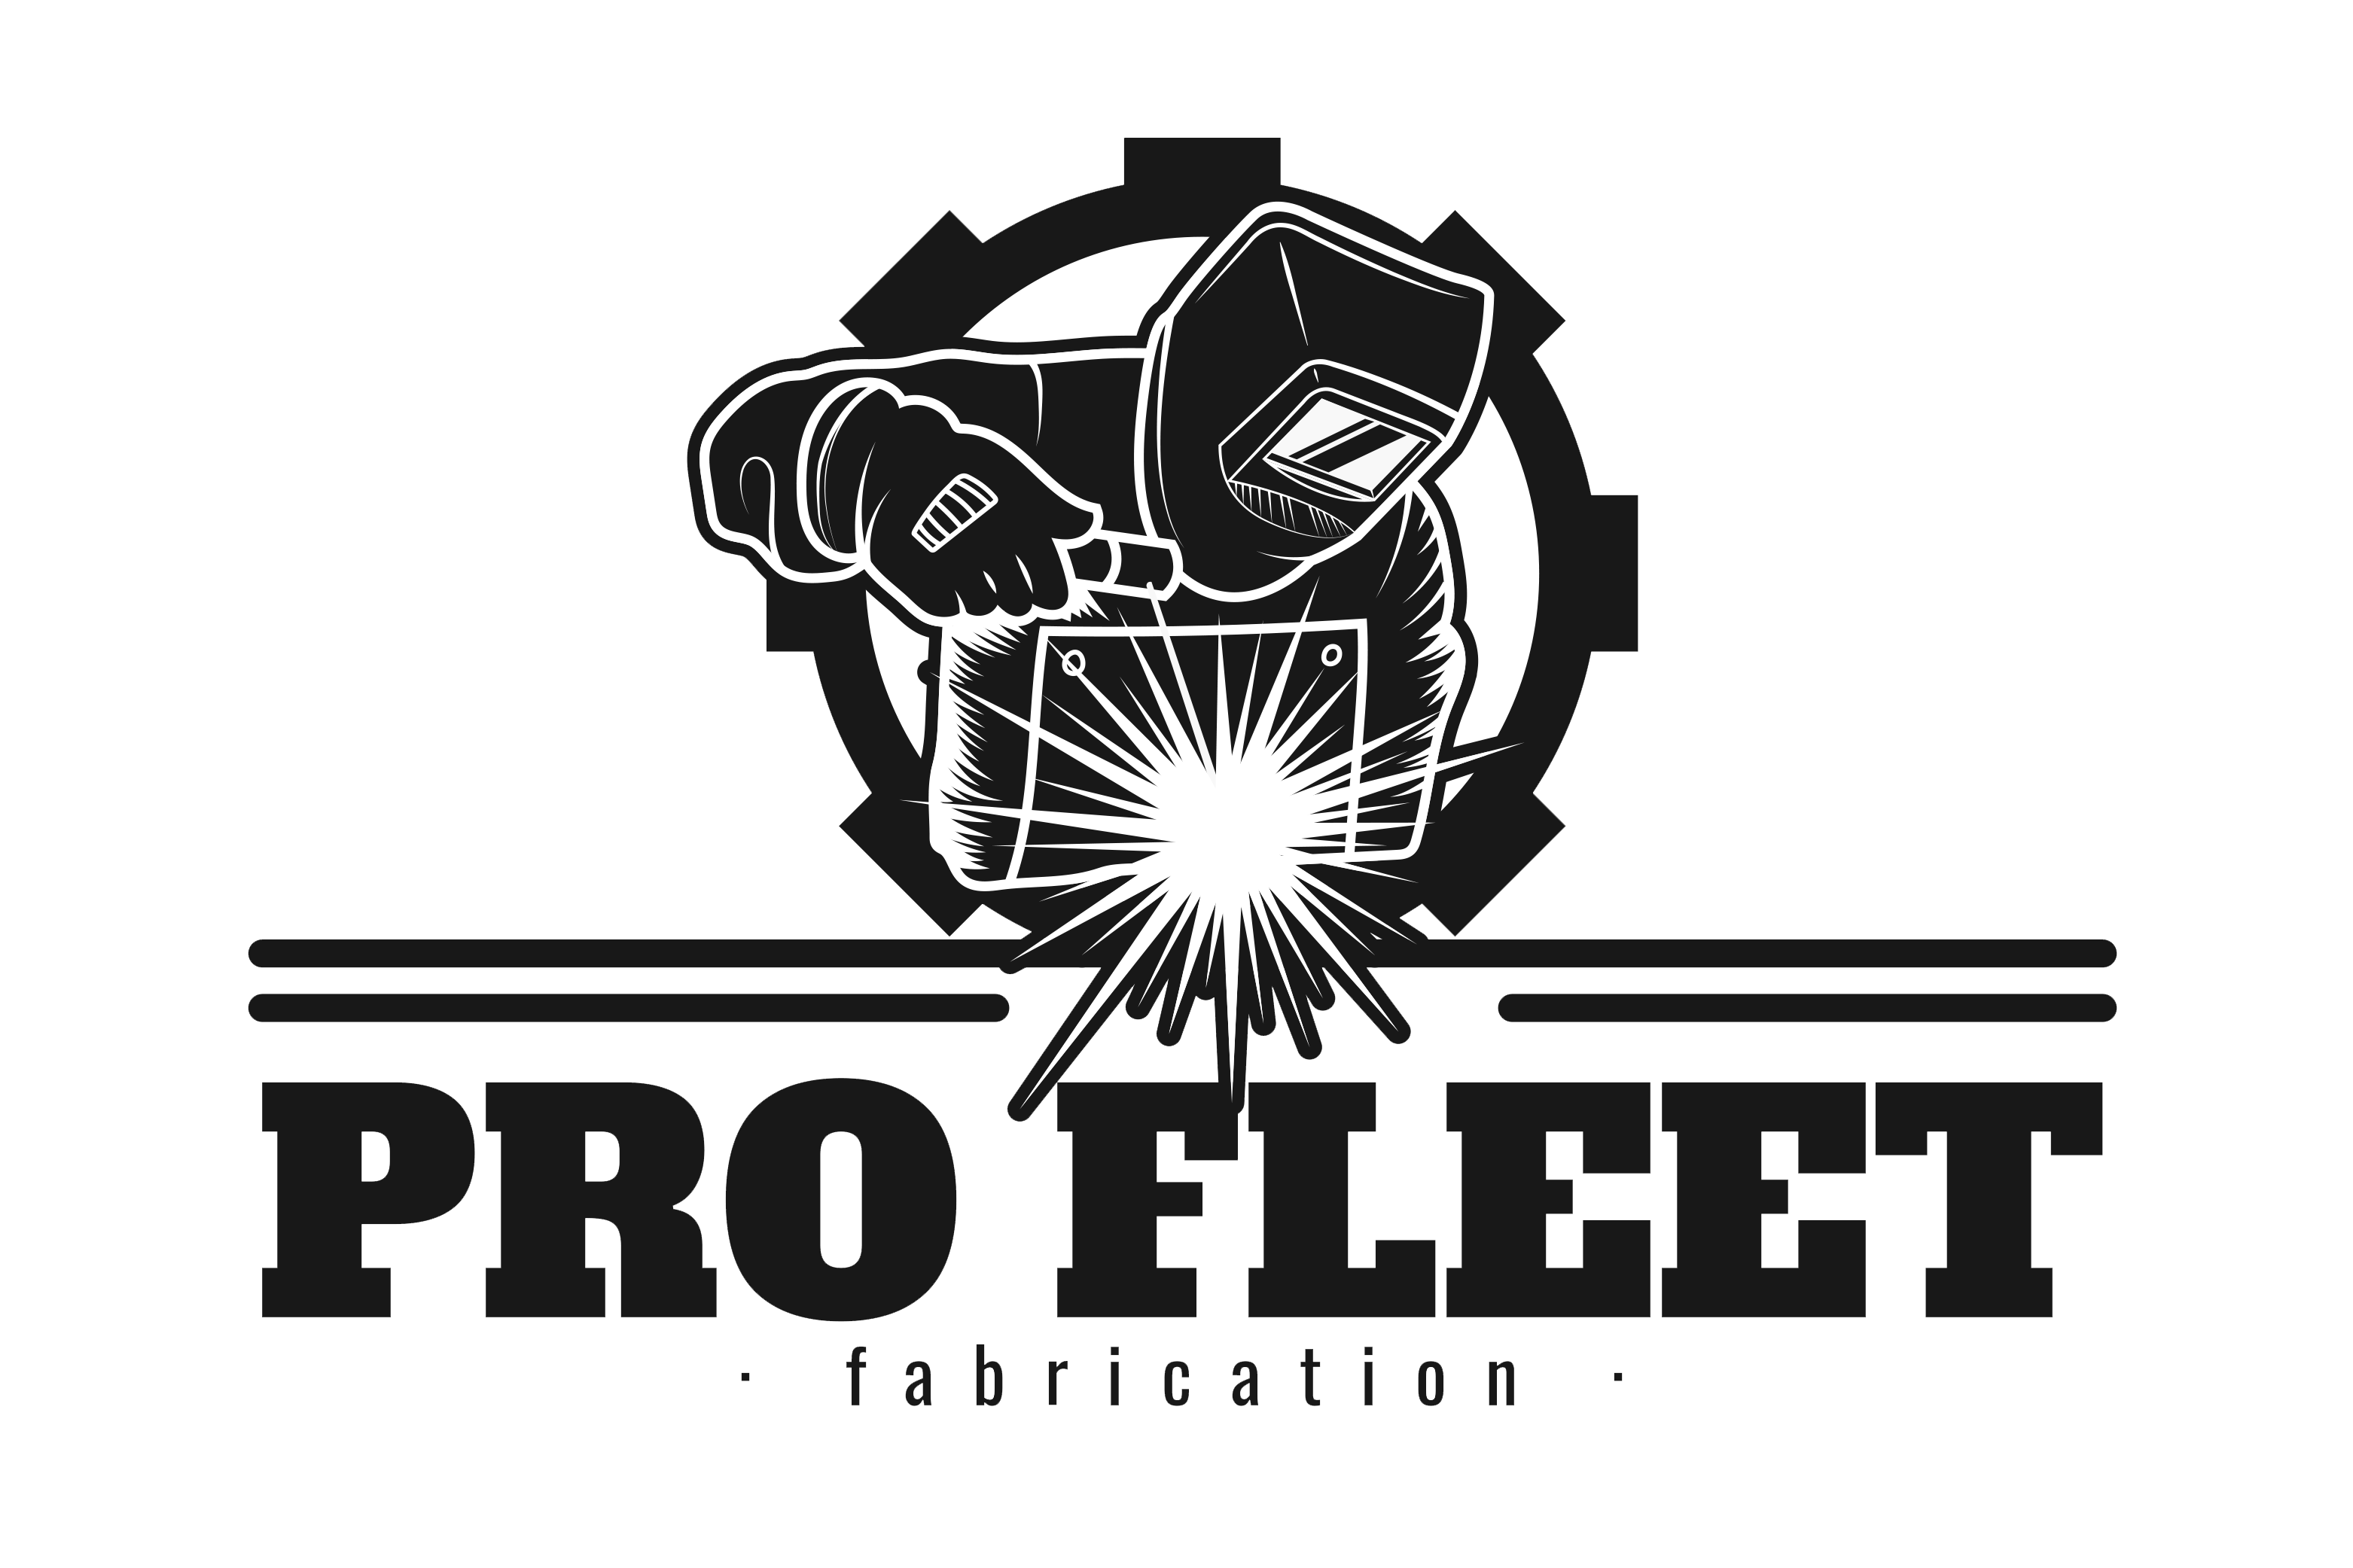 ProFleet